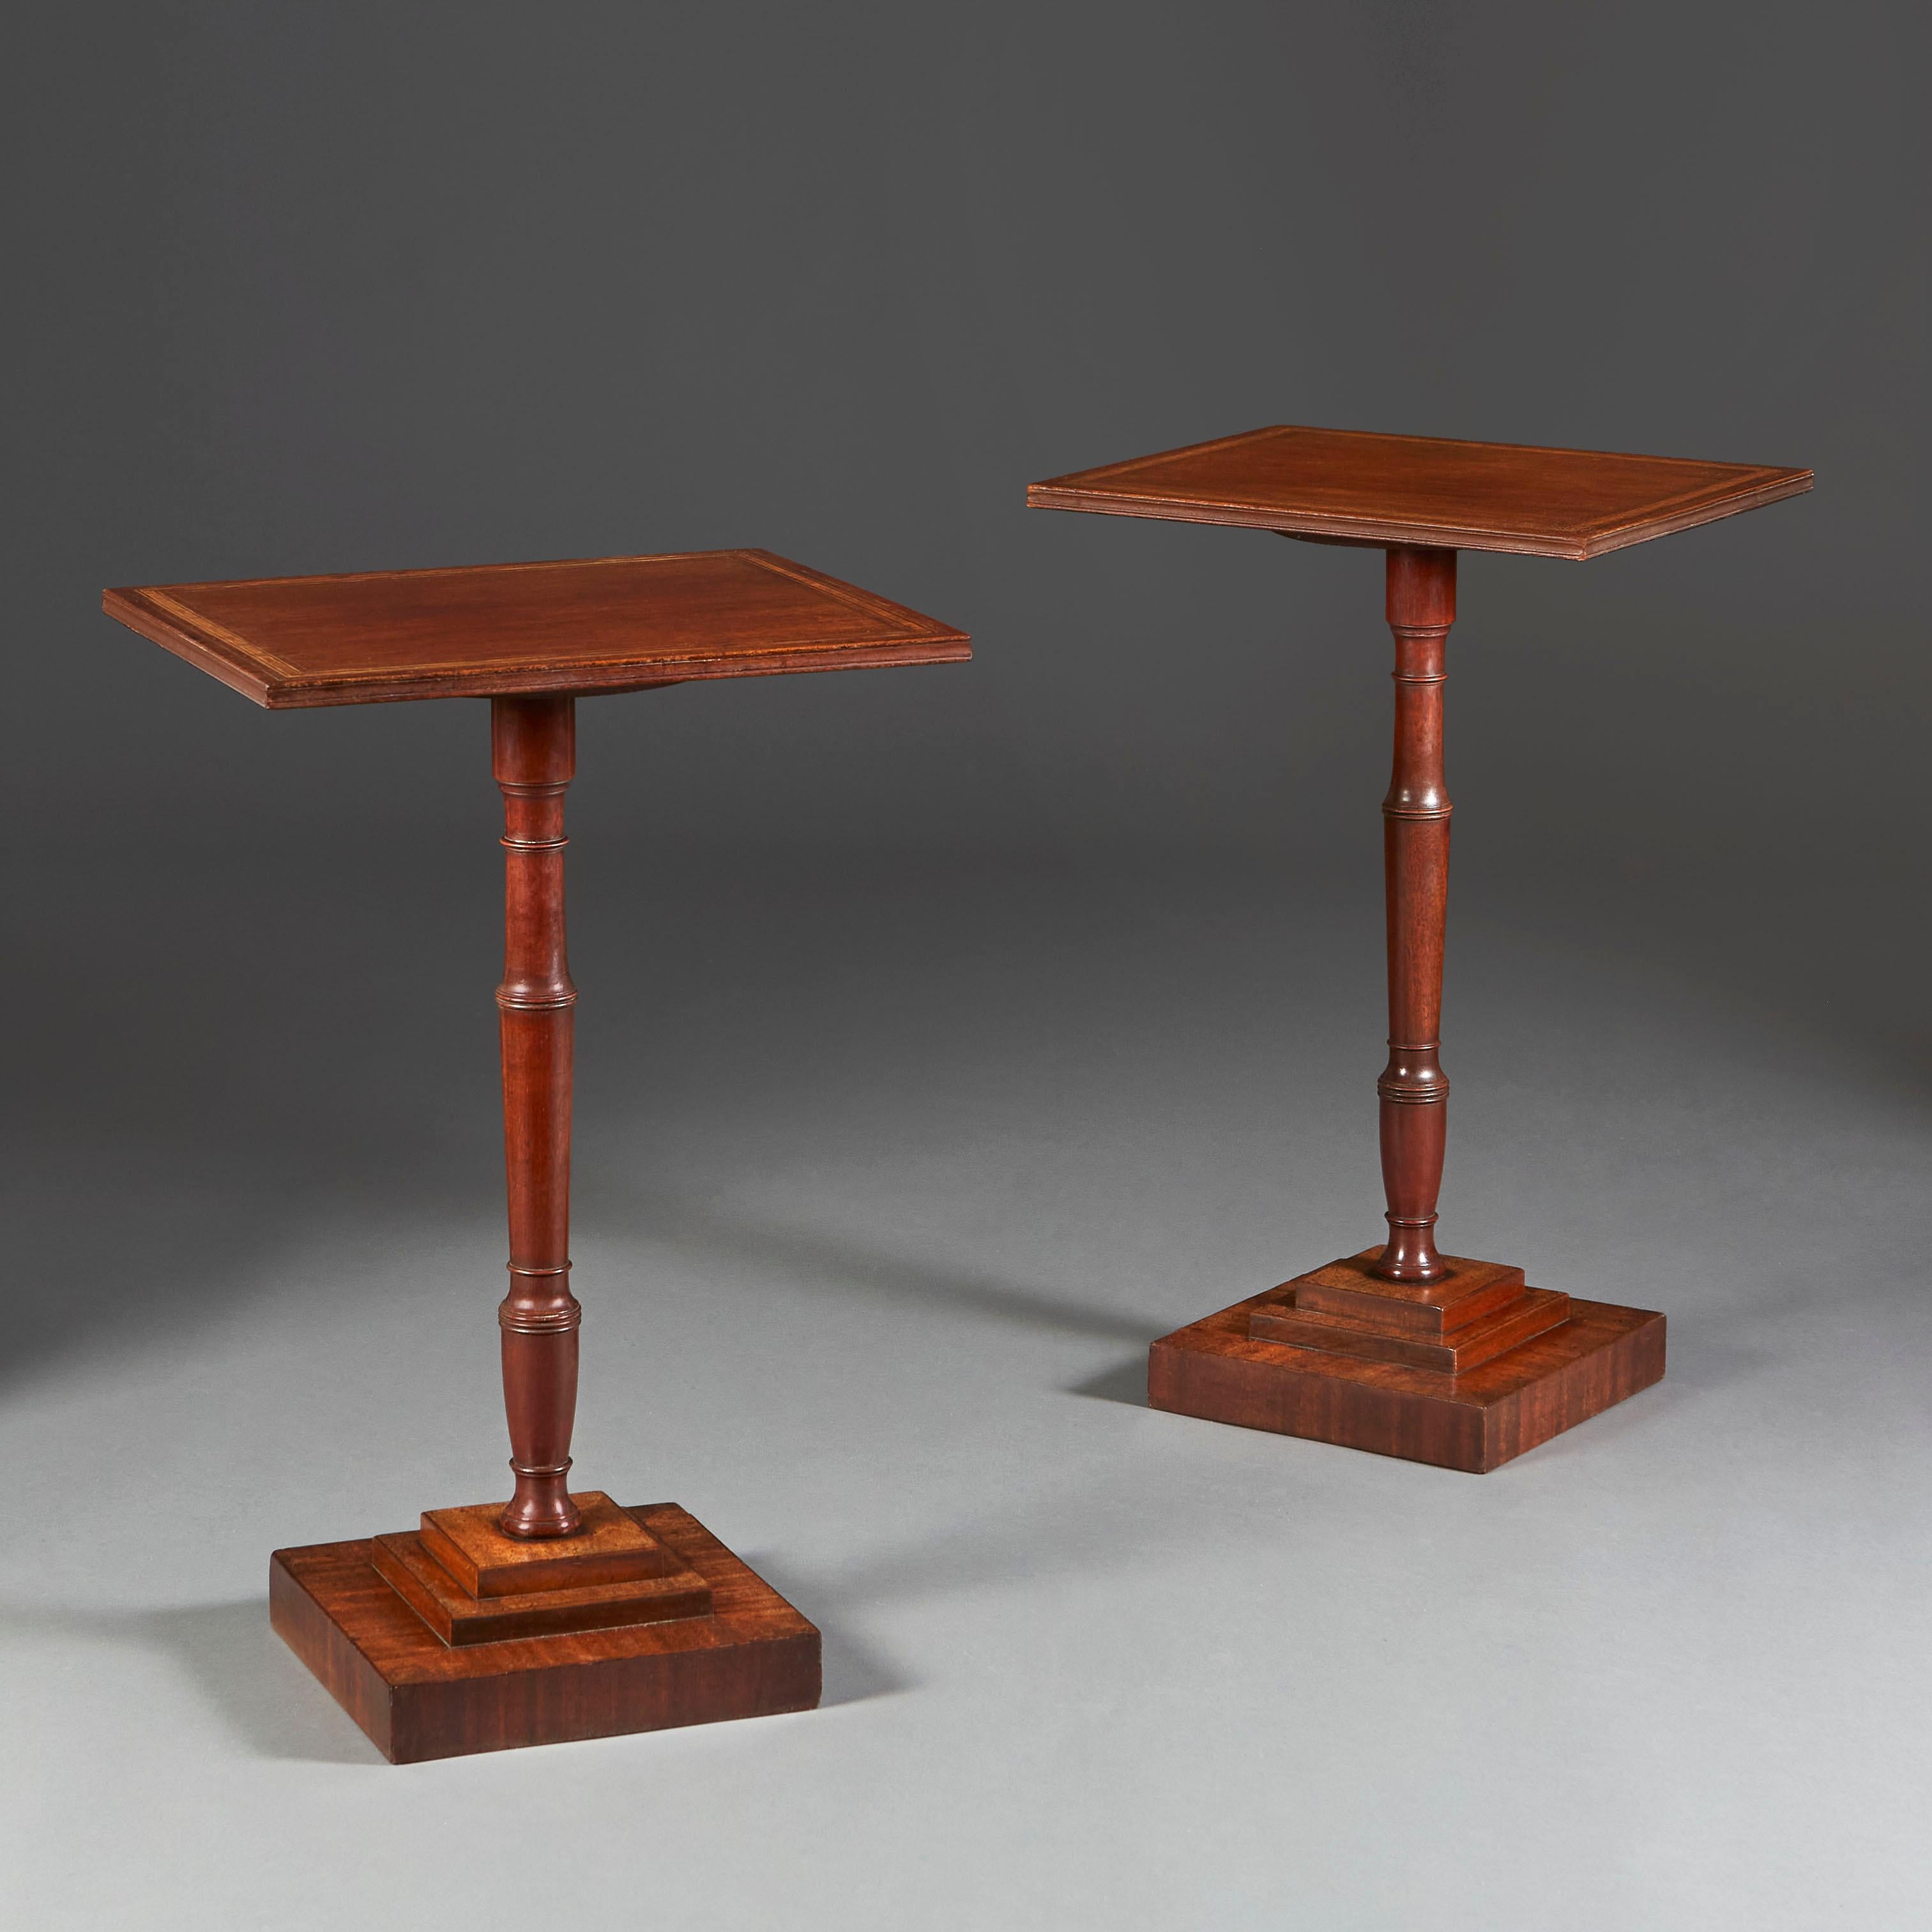 Une paire inhabituelle de tables d'appoint en acajou du milieu du XIXe siècle, avec des bandes croisées en bois de tulipier, supportées par des piédestaux tournés et des bases étagées.